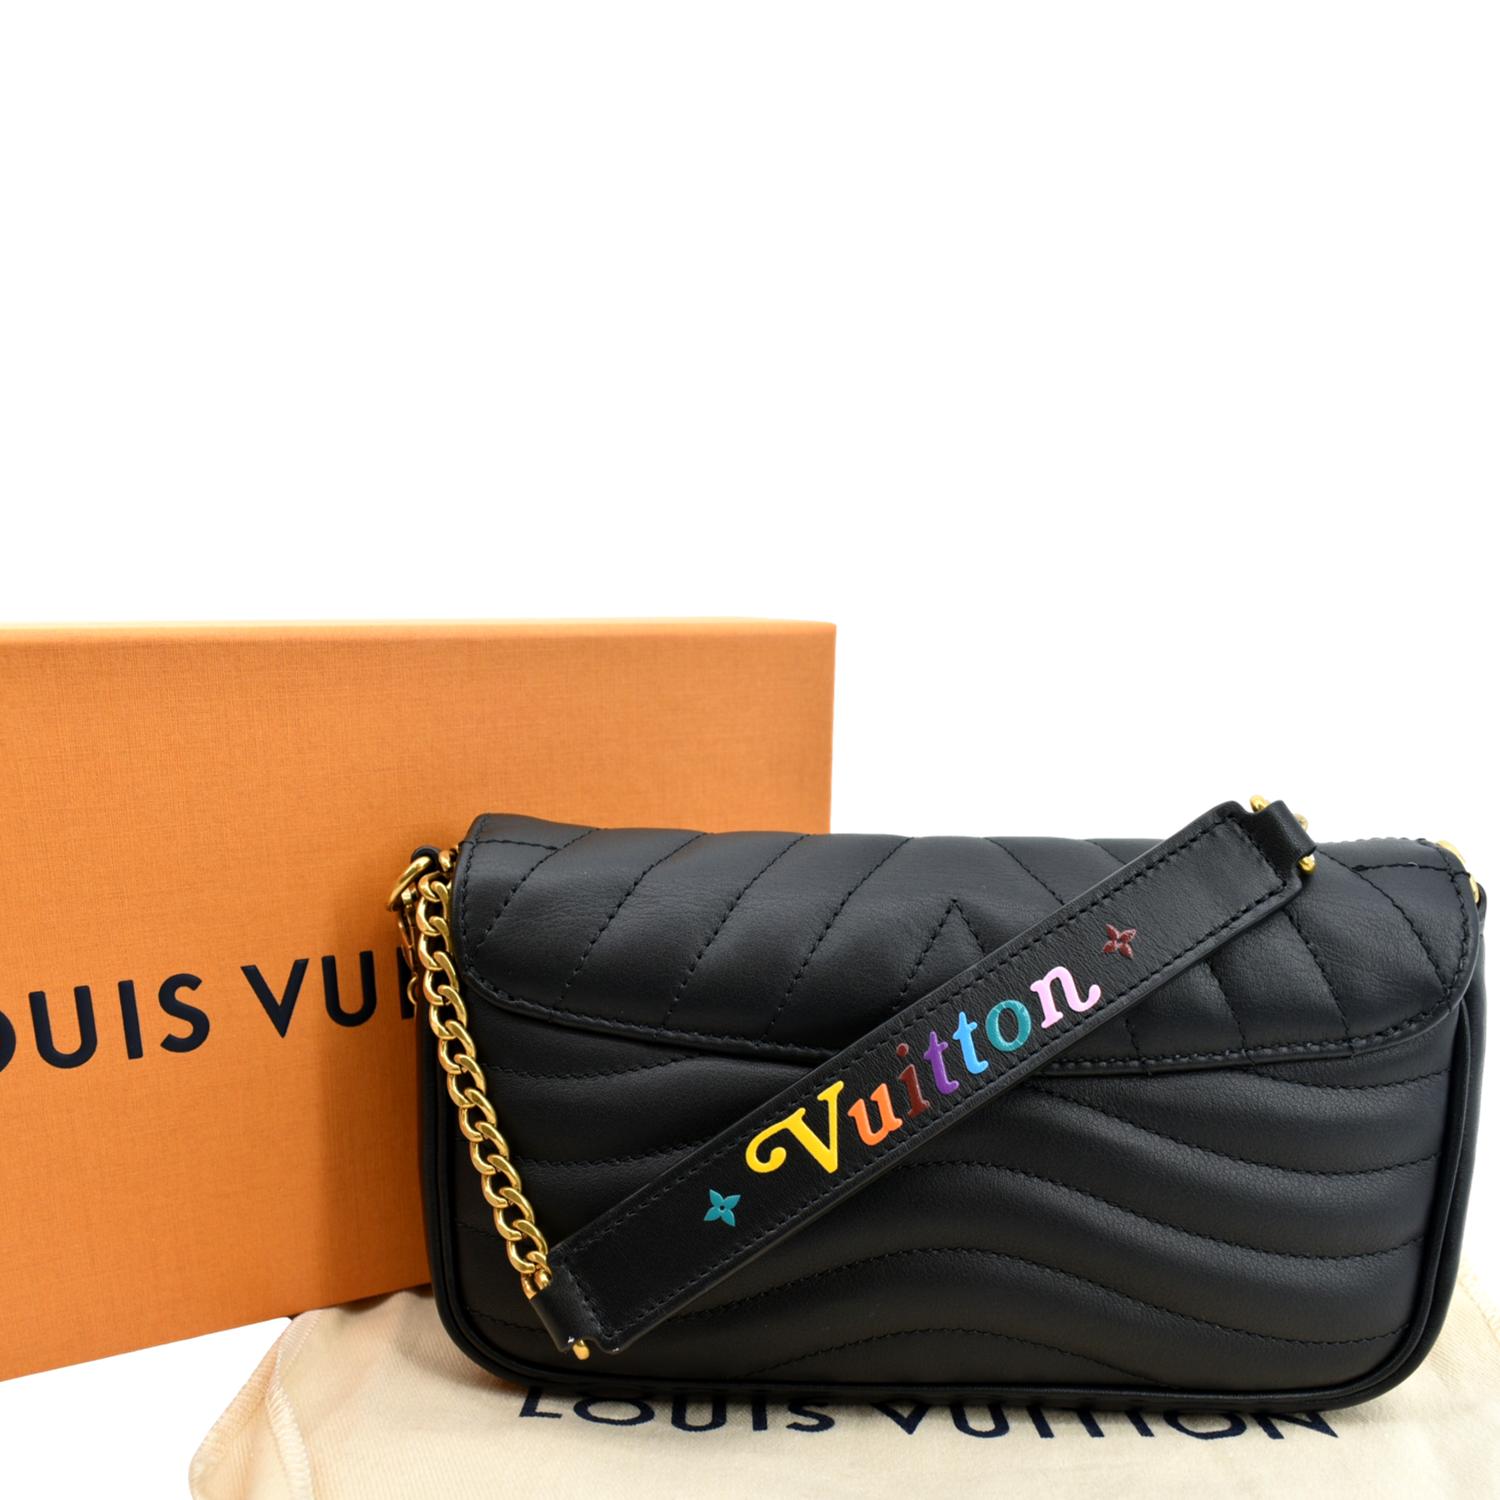 Louis Vuitton Louis Vuitton New Wave Camera Bag Shoulder Bag Black